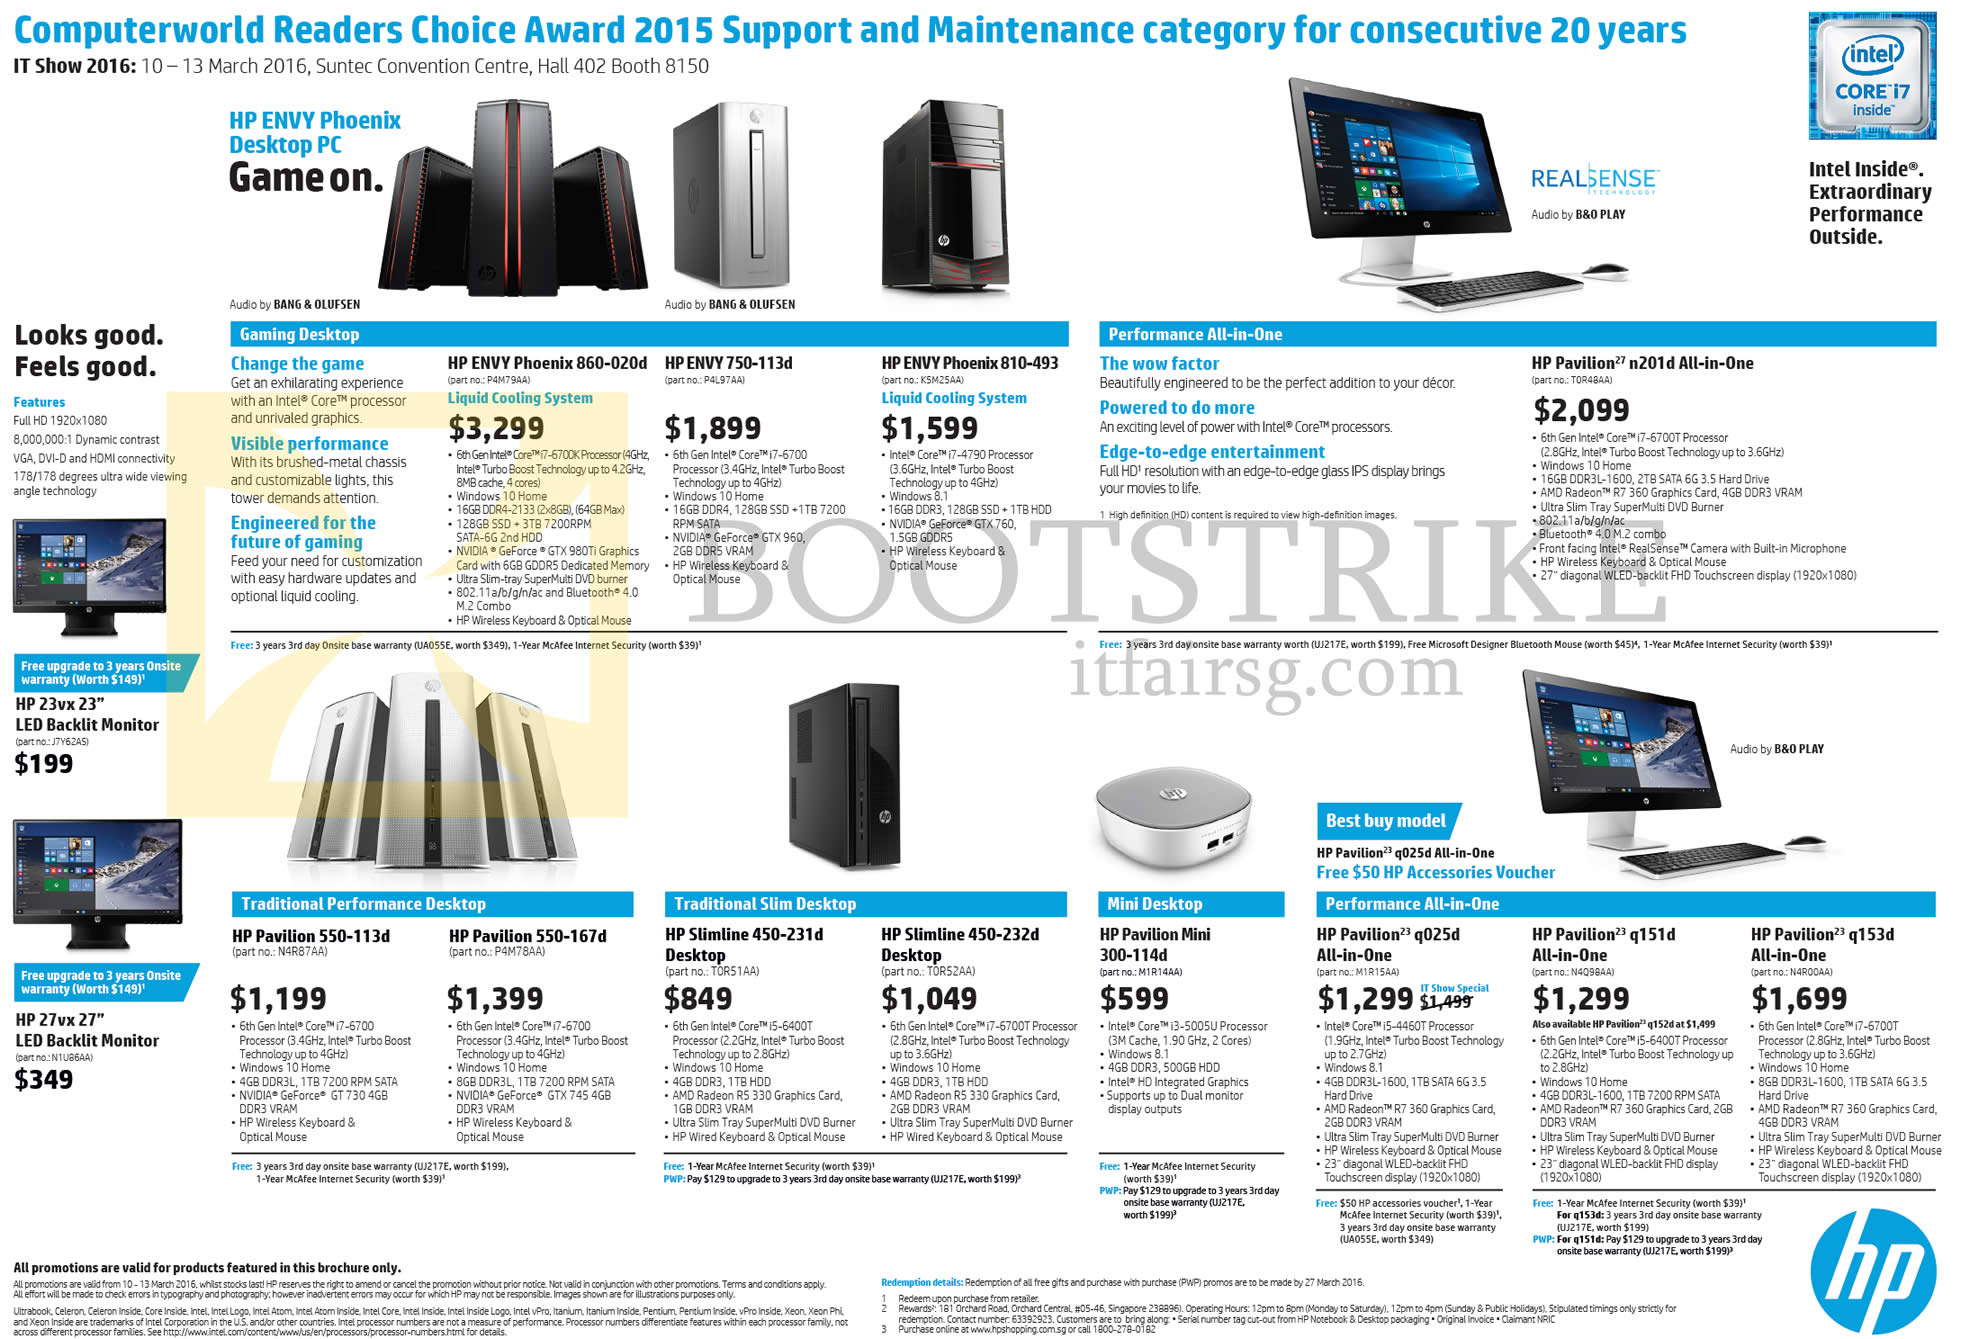 IT SHOW 2016 price list image brochure of HP Desktop PCs Envy Phoenix, Envy, Pavilion, Slimline, Pavilion Mini